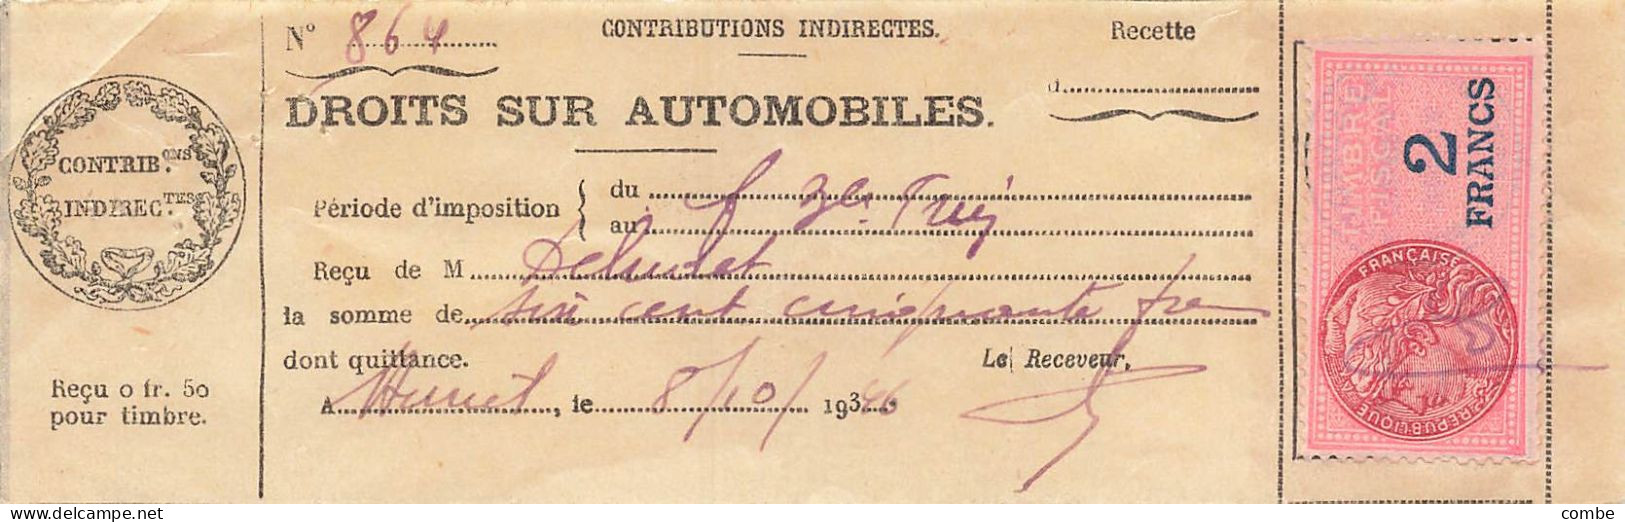 DROITS SUR AUTOMOBILES. VAILLY, AUXERRE. 1931,36,37 - Documents Historiques